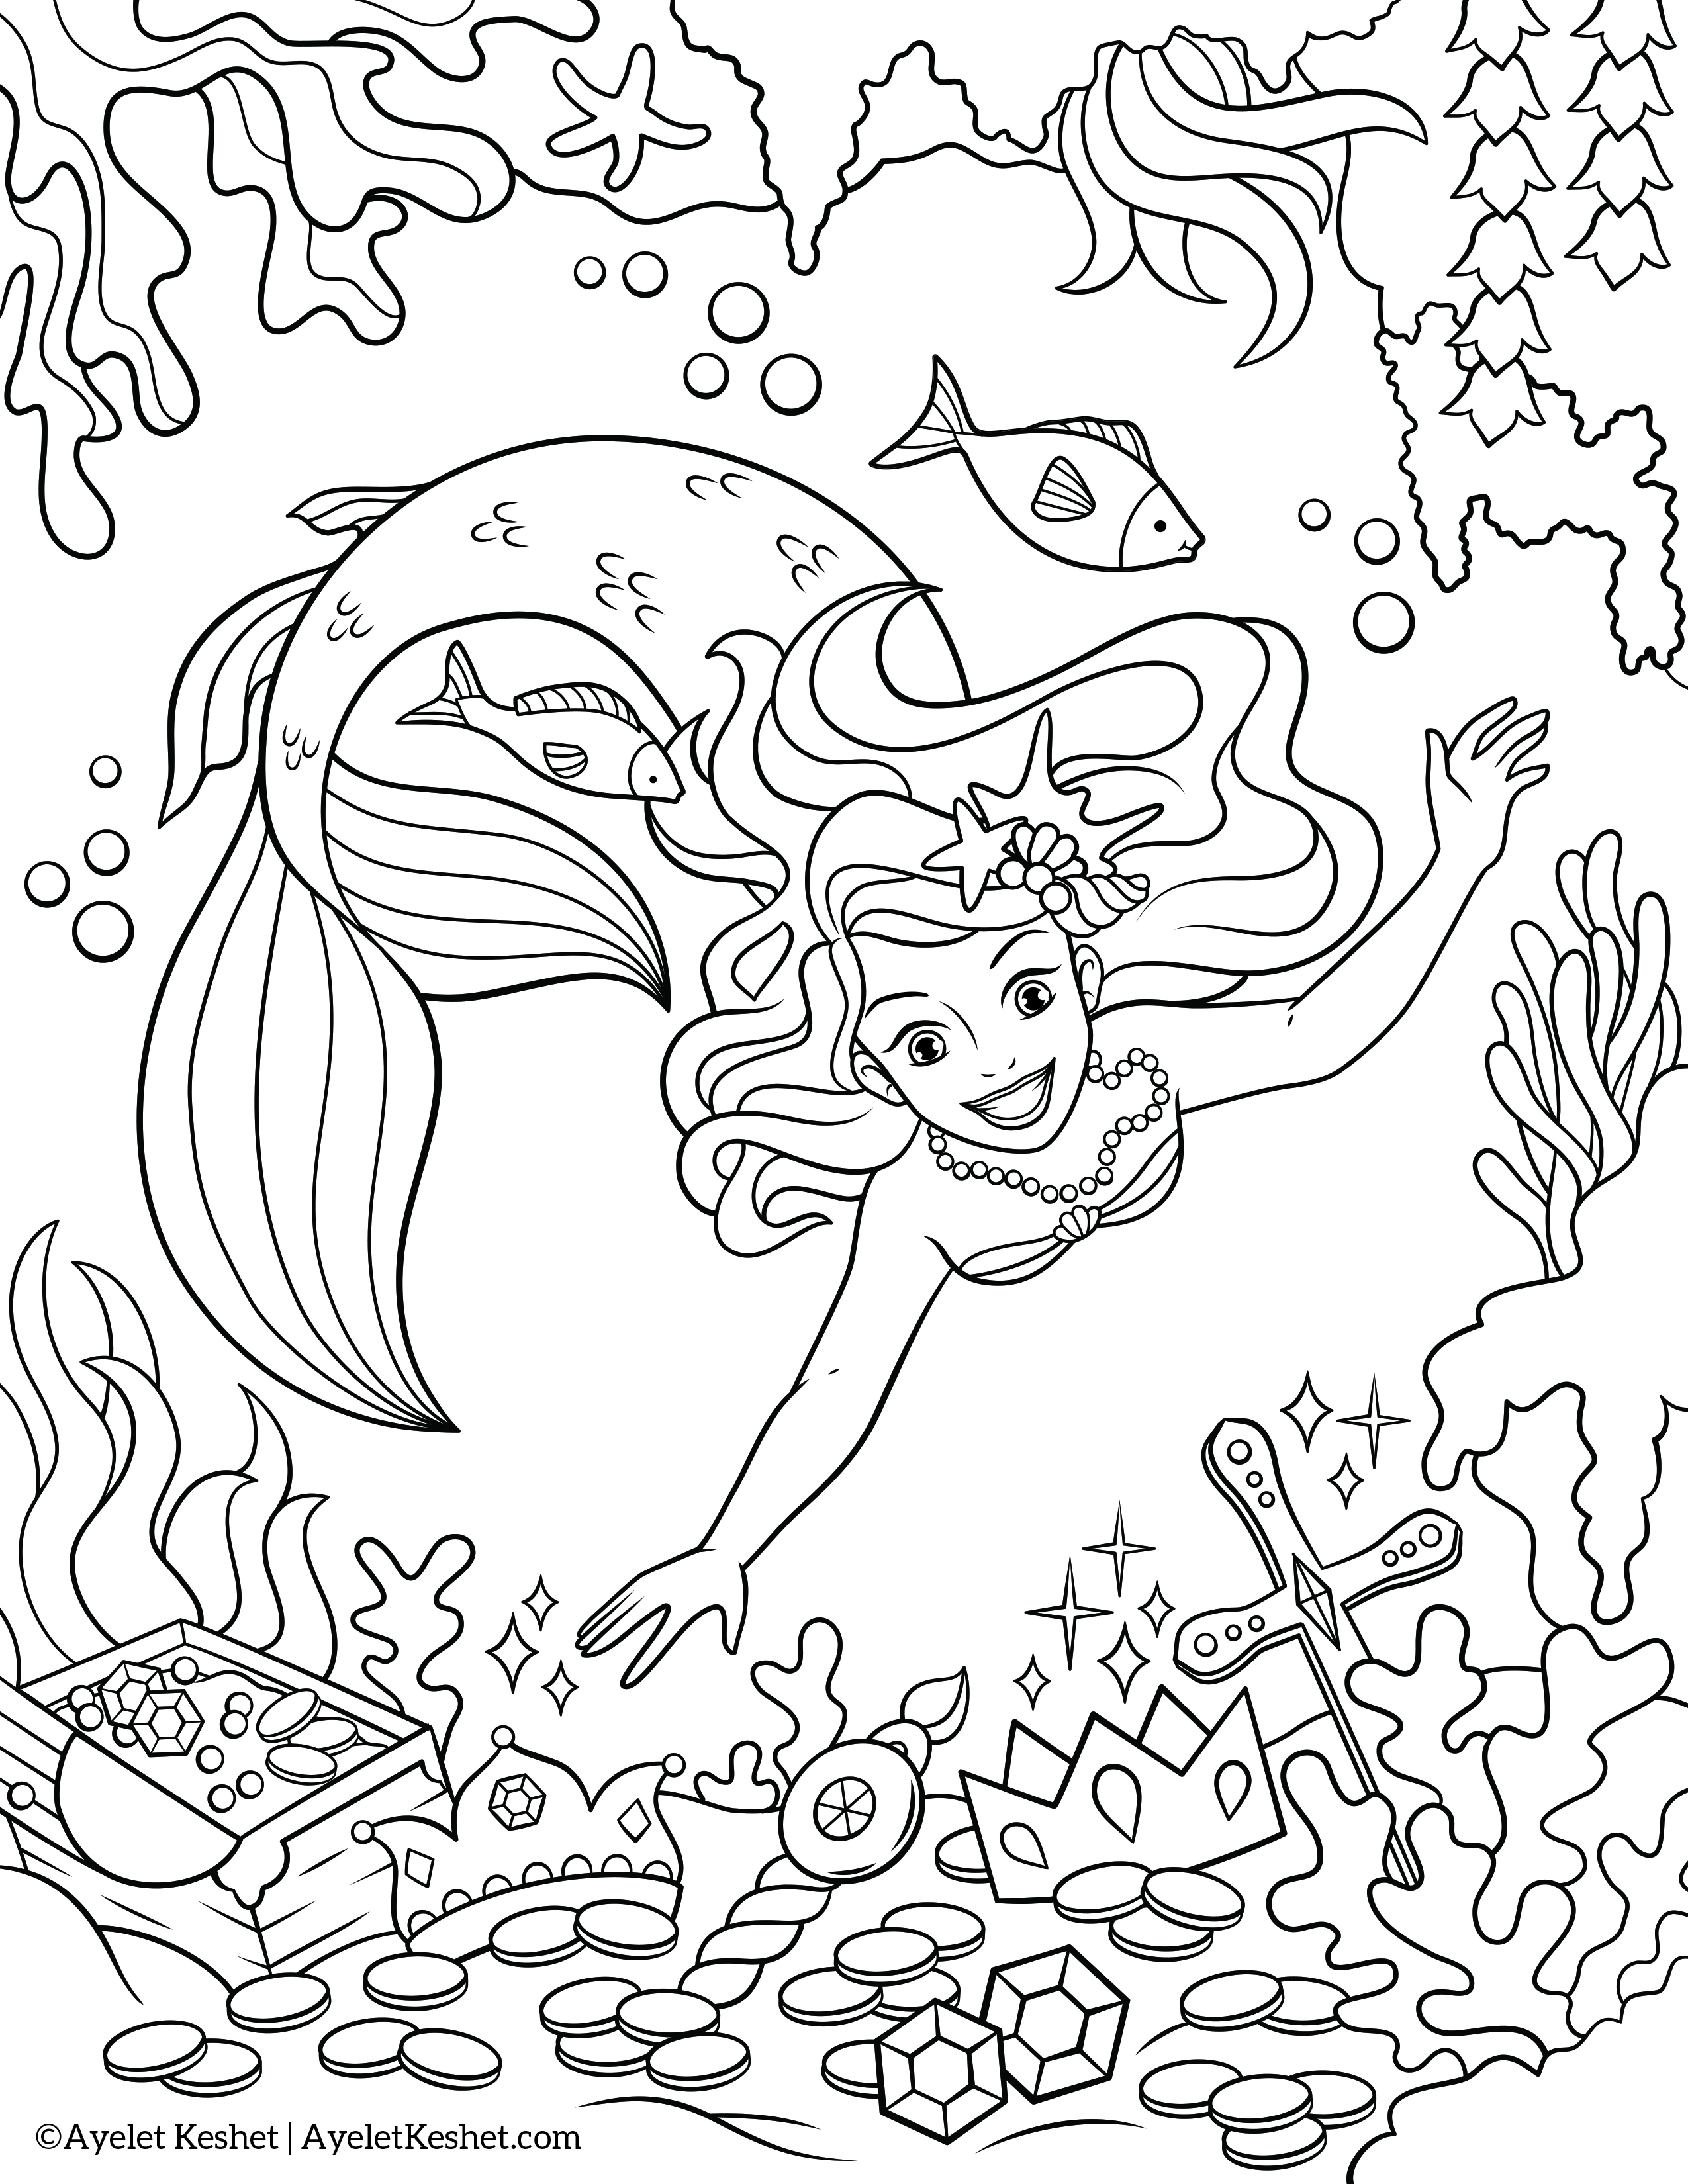 Free mermaids coloring pages   Ayelet Keshet